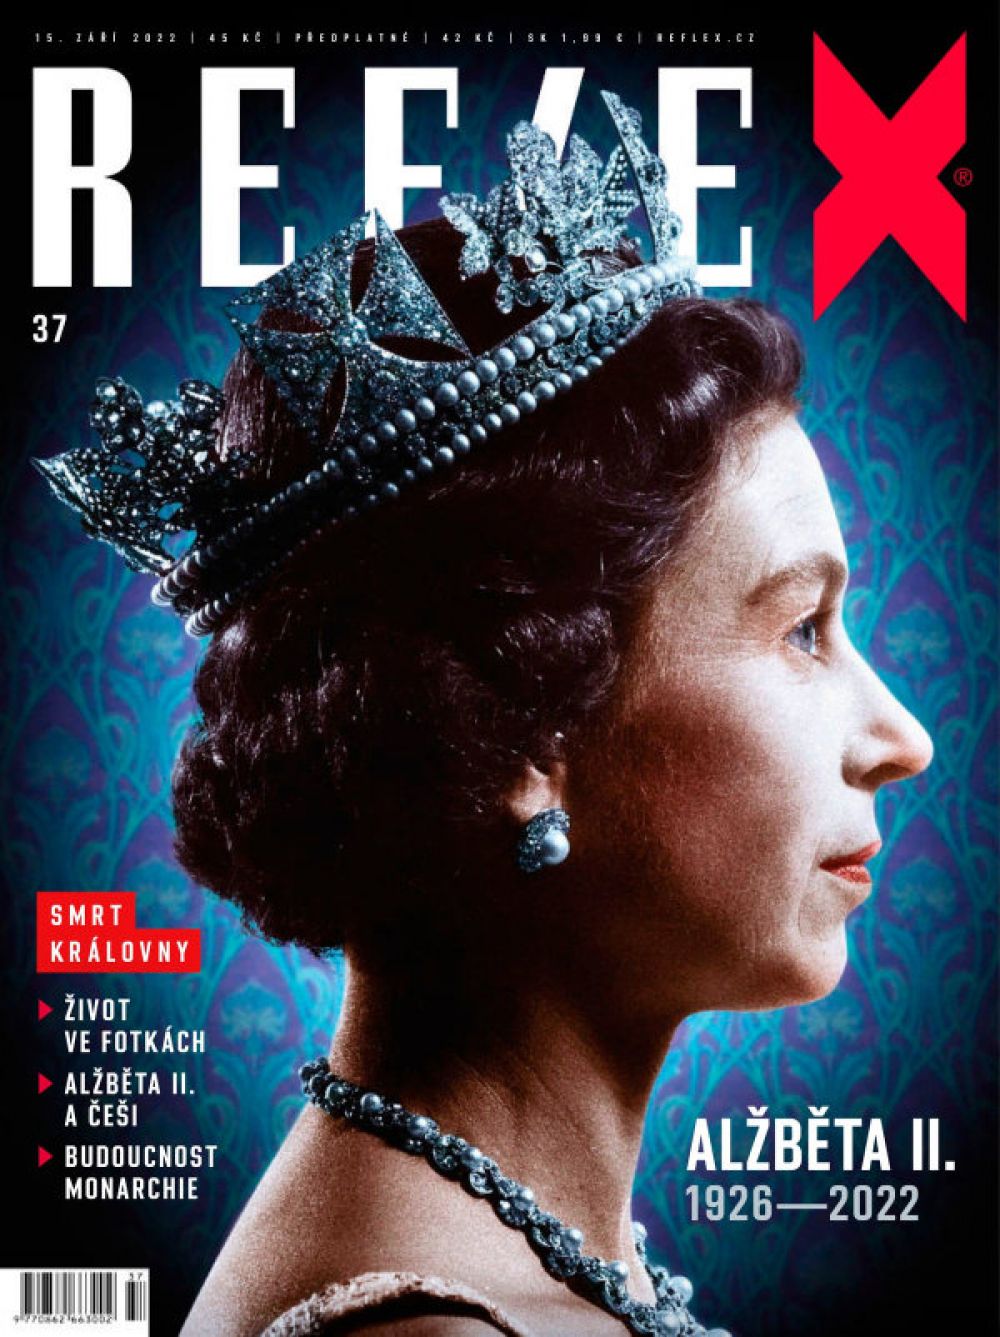 Уход из жизни королевы Великобритании Елизаветы II, правившей страной 70 лет, ознаменовал собой окончание эпохи. Неудивительно, что об этом написали большинство мировых СМИ, в том числе чешский журнал Reflex. Королевы не стало 8 сентября 2022 года в возрасте 96 лет.